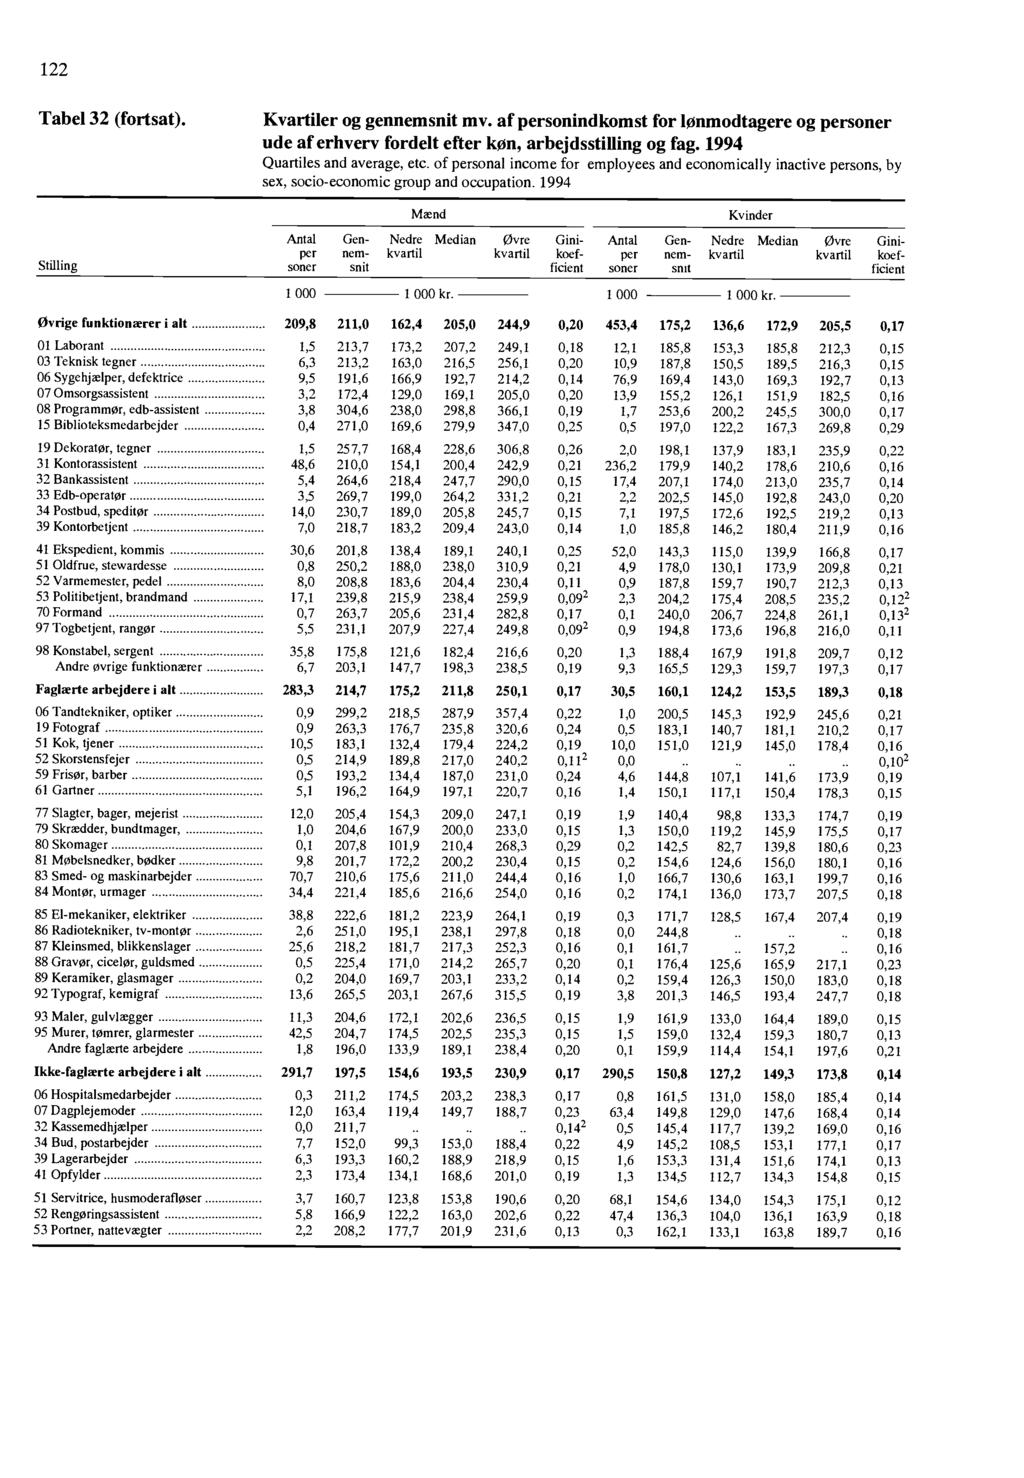 122 Tabel 32 (fortsat) Kvartiler og gennemsnit mv af personindkomst for lonmodtagere og personer ude af erhvery fordelt efter Icon, arbejdsstilling og fag 1994 Quartiles and average, etc of personal